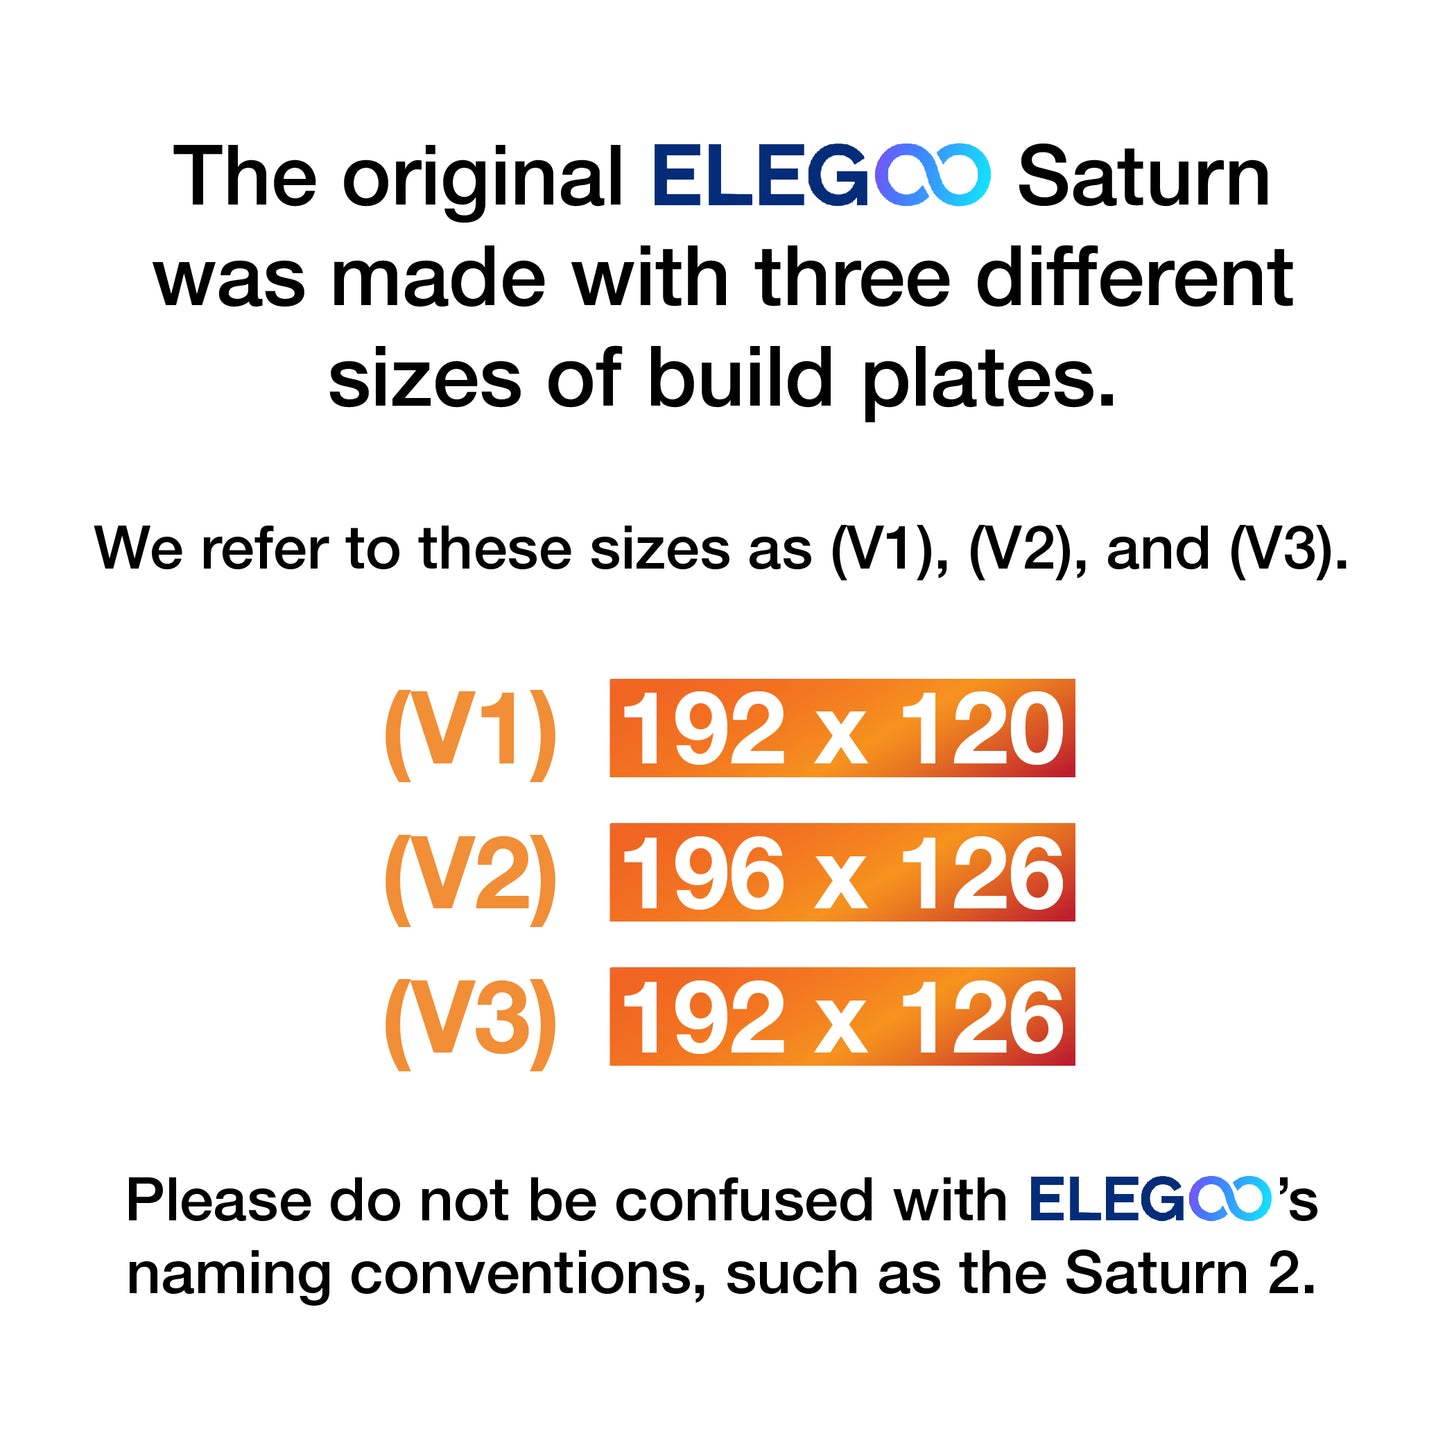 (V1) Elegoo Saturn - 192 x 120